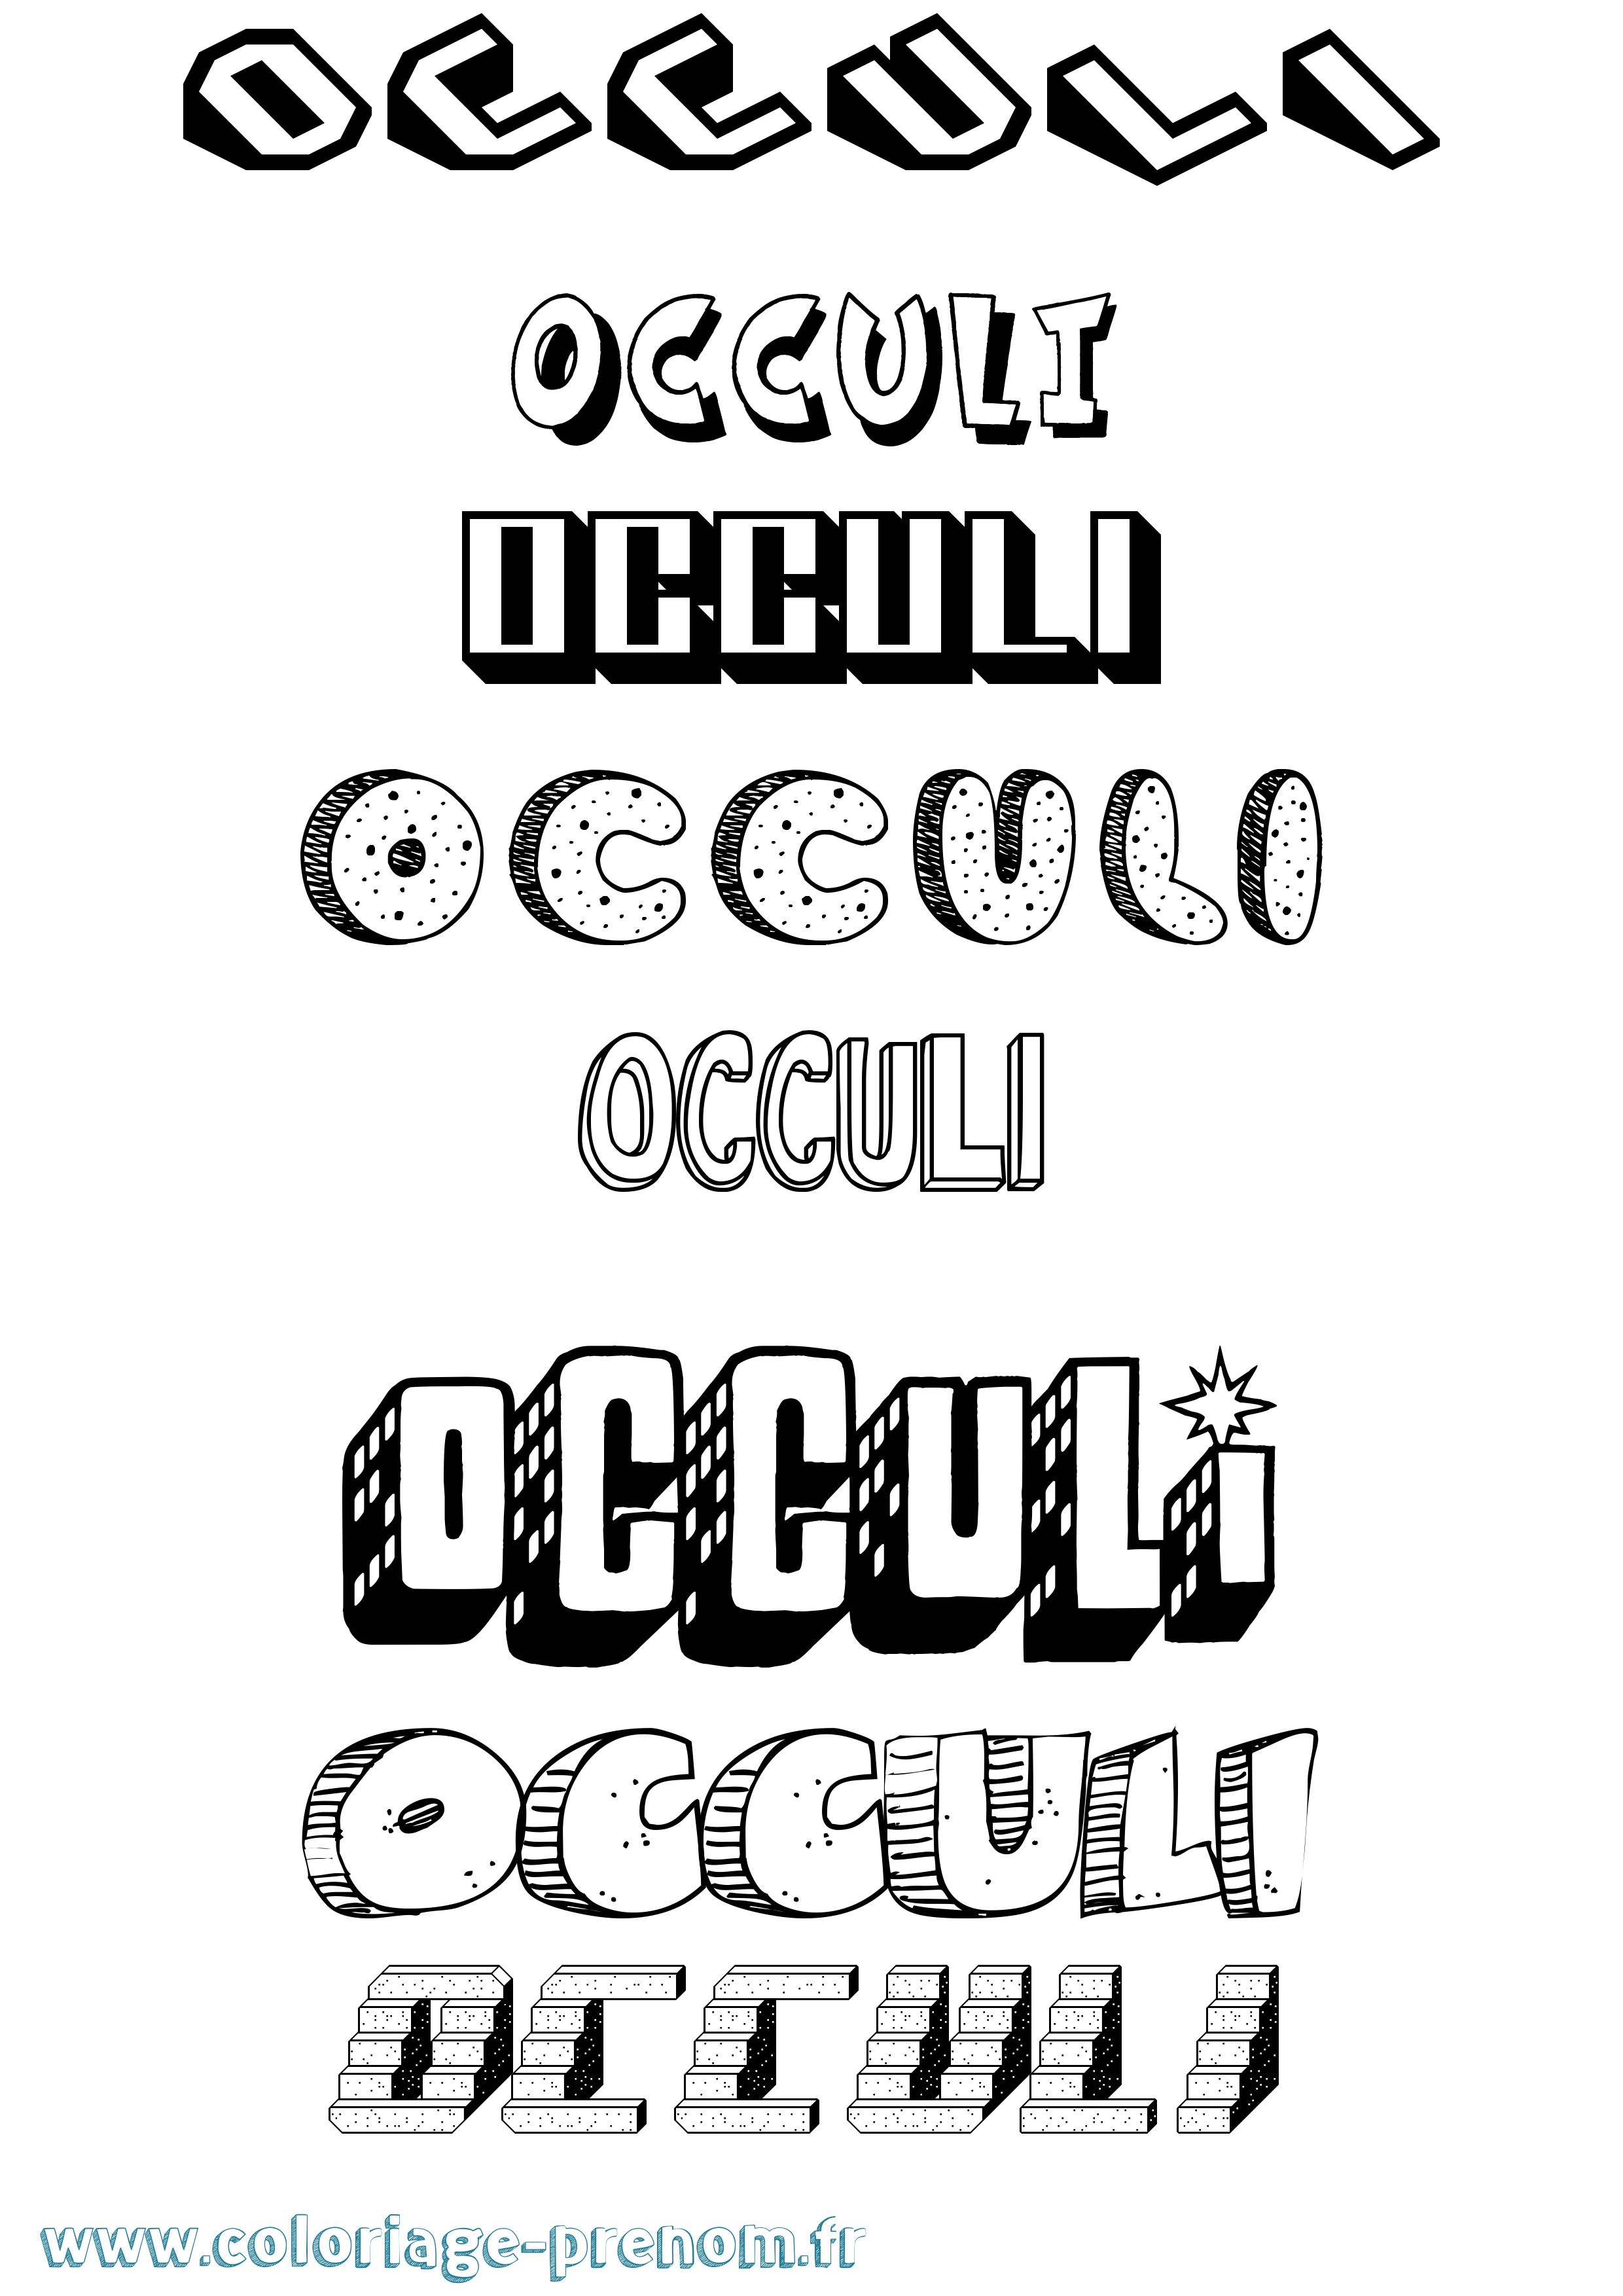 Coloriage prénom Occuli Effet 3D